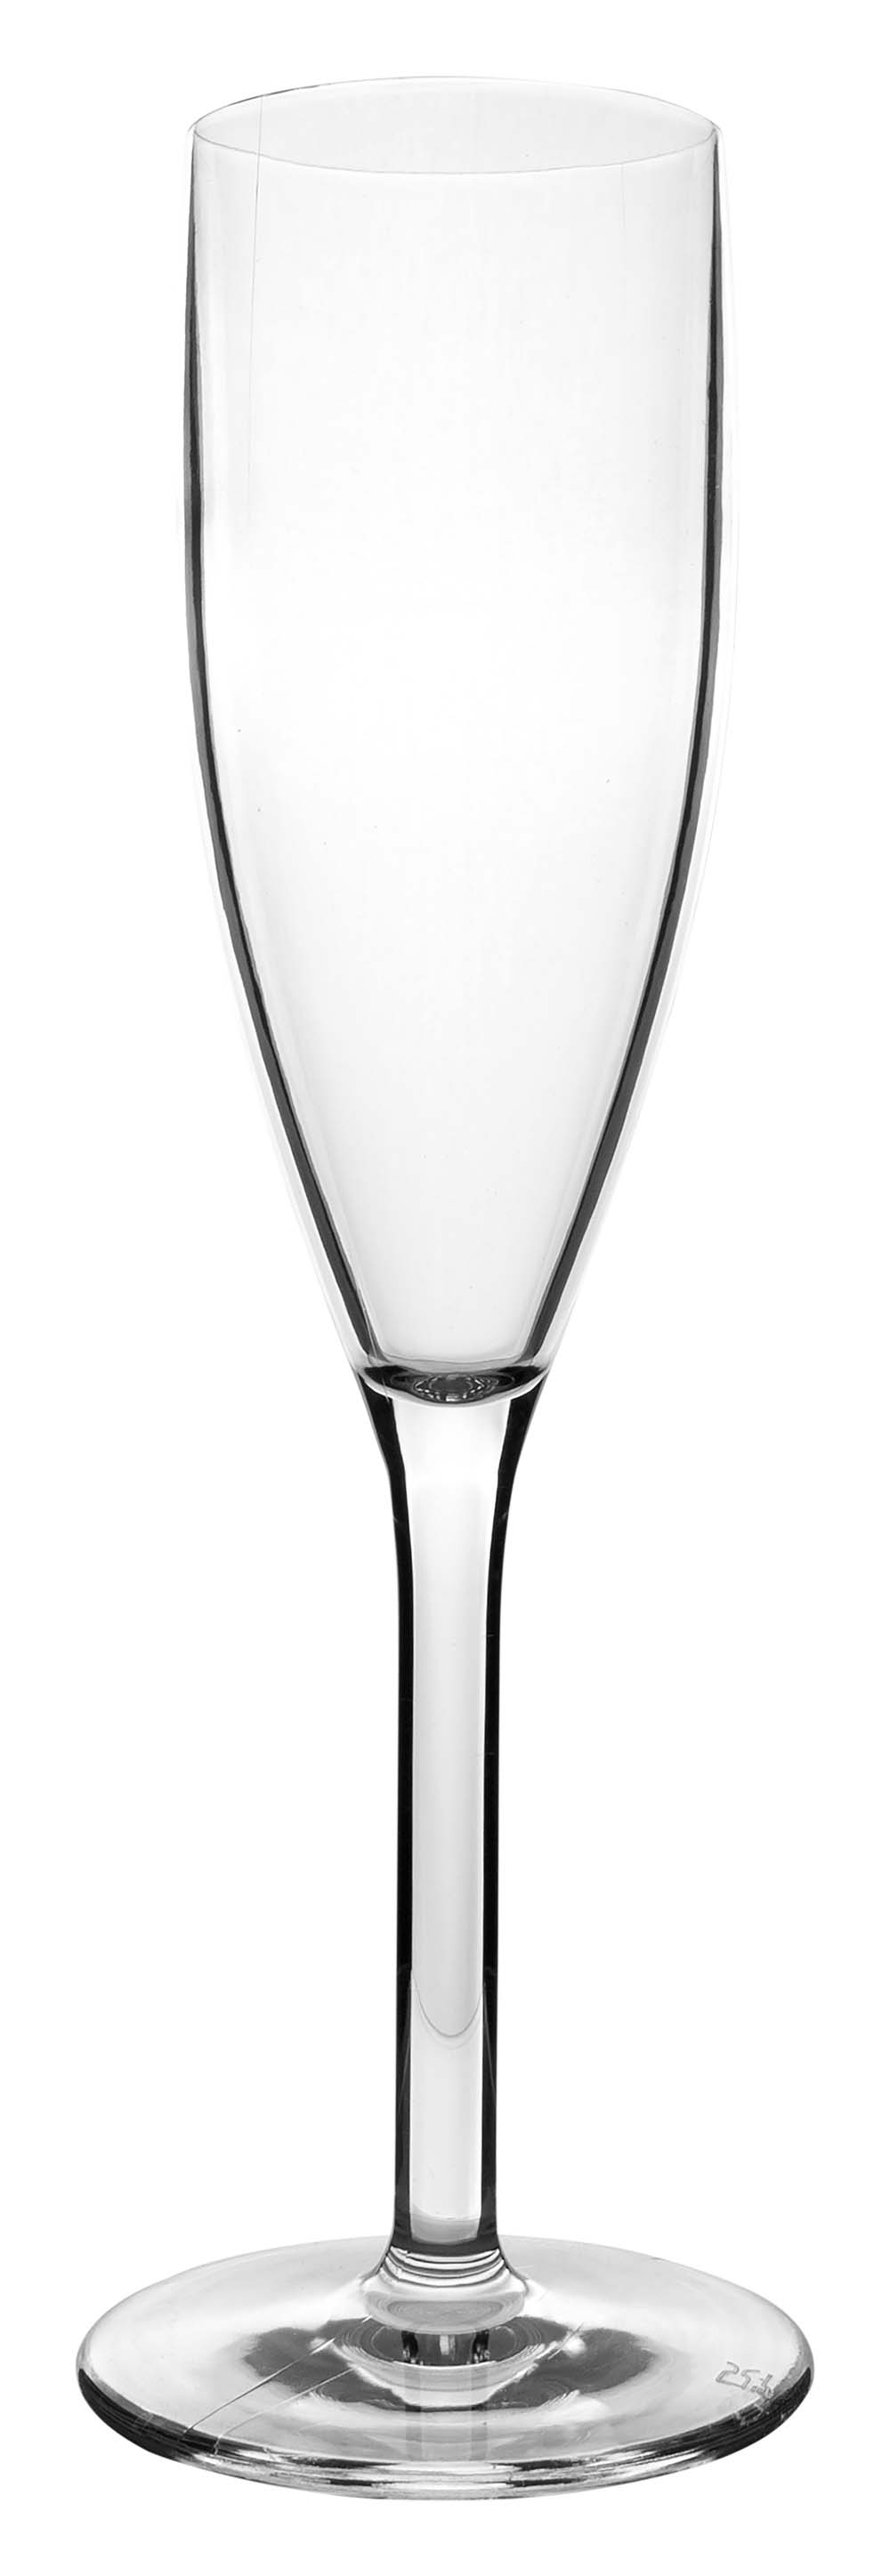 6101439 Een extra stevige en luxe set champagneglazen. Gemaakt van 100% polycarbonaat. Hierdoor is het glas vrijwel onbreekbaar, lichtgewicht en kraswerend. Ook zijn deze glazen vaatwasmachinebestendig. Per 2 stuks verpakt.